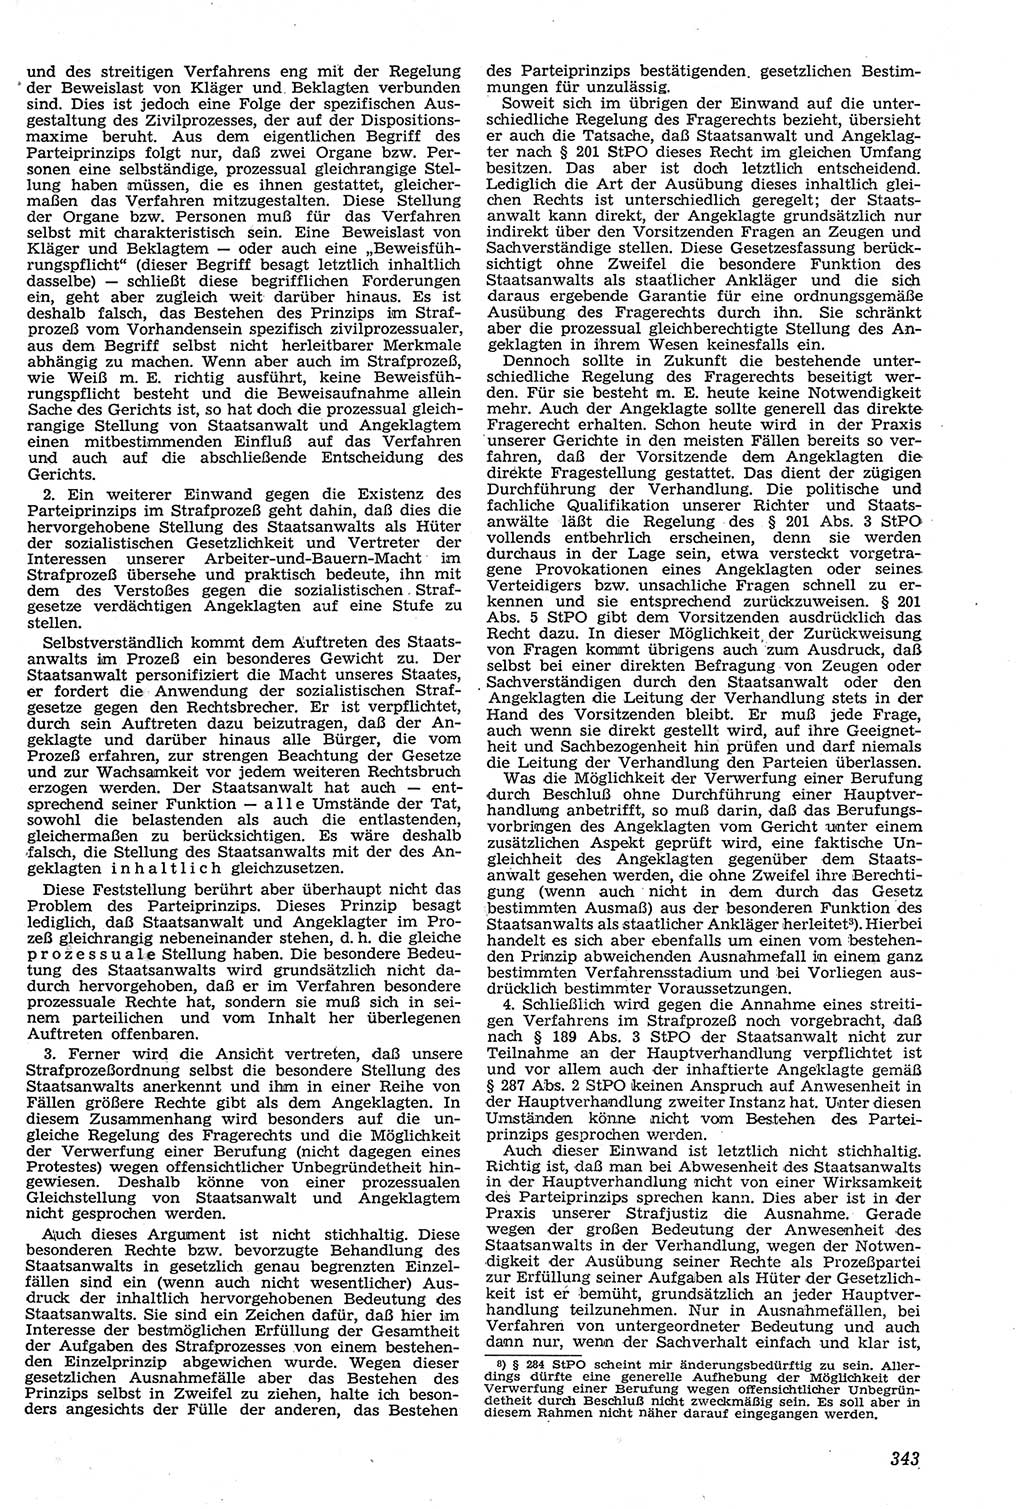 Neue Justiz (NJ), Zeitschrift für Recht und Rechtswissenschaft [Deutsche Demokratische Republik (DDR)], 11. Jahrgang 1957, Seite 343 (NJ DDR 1957, S. 343)